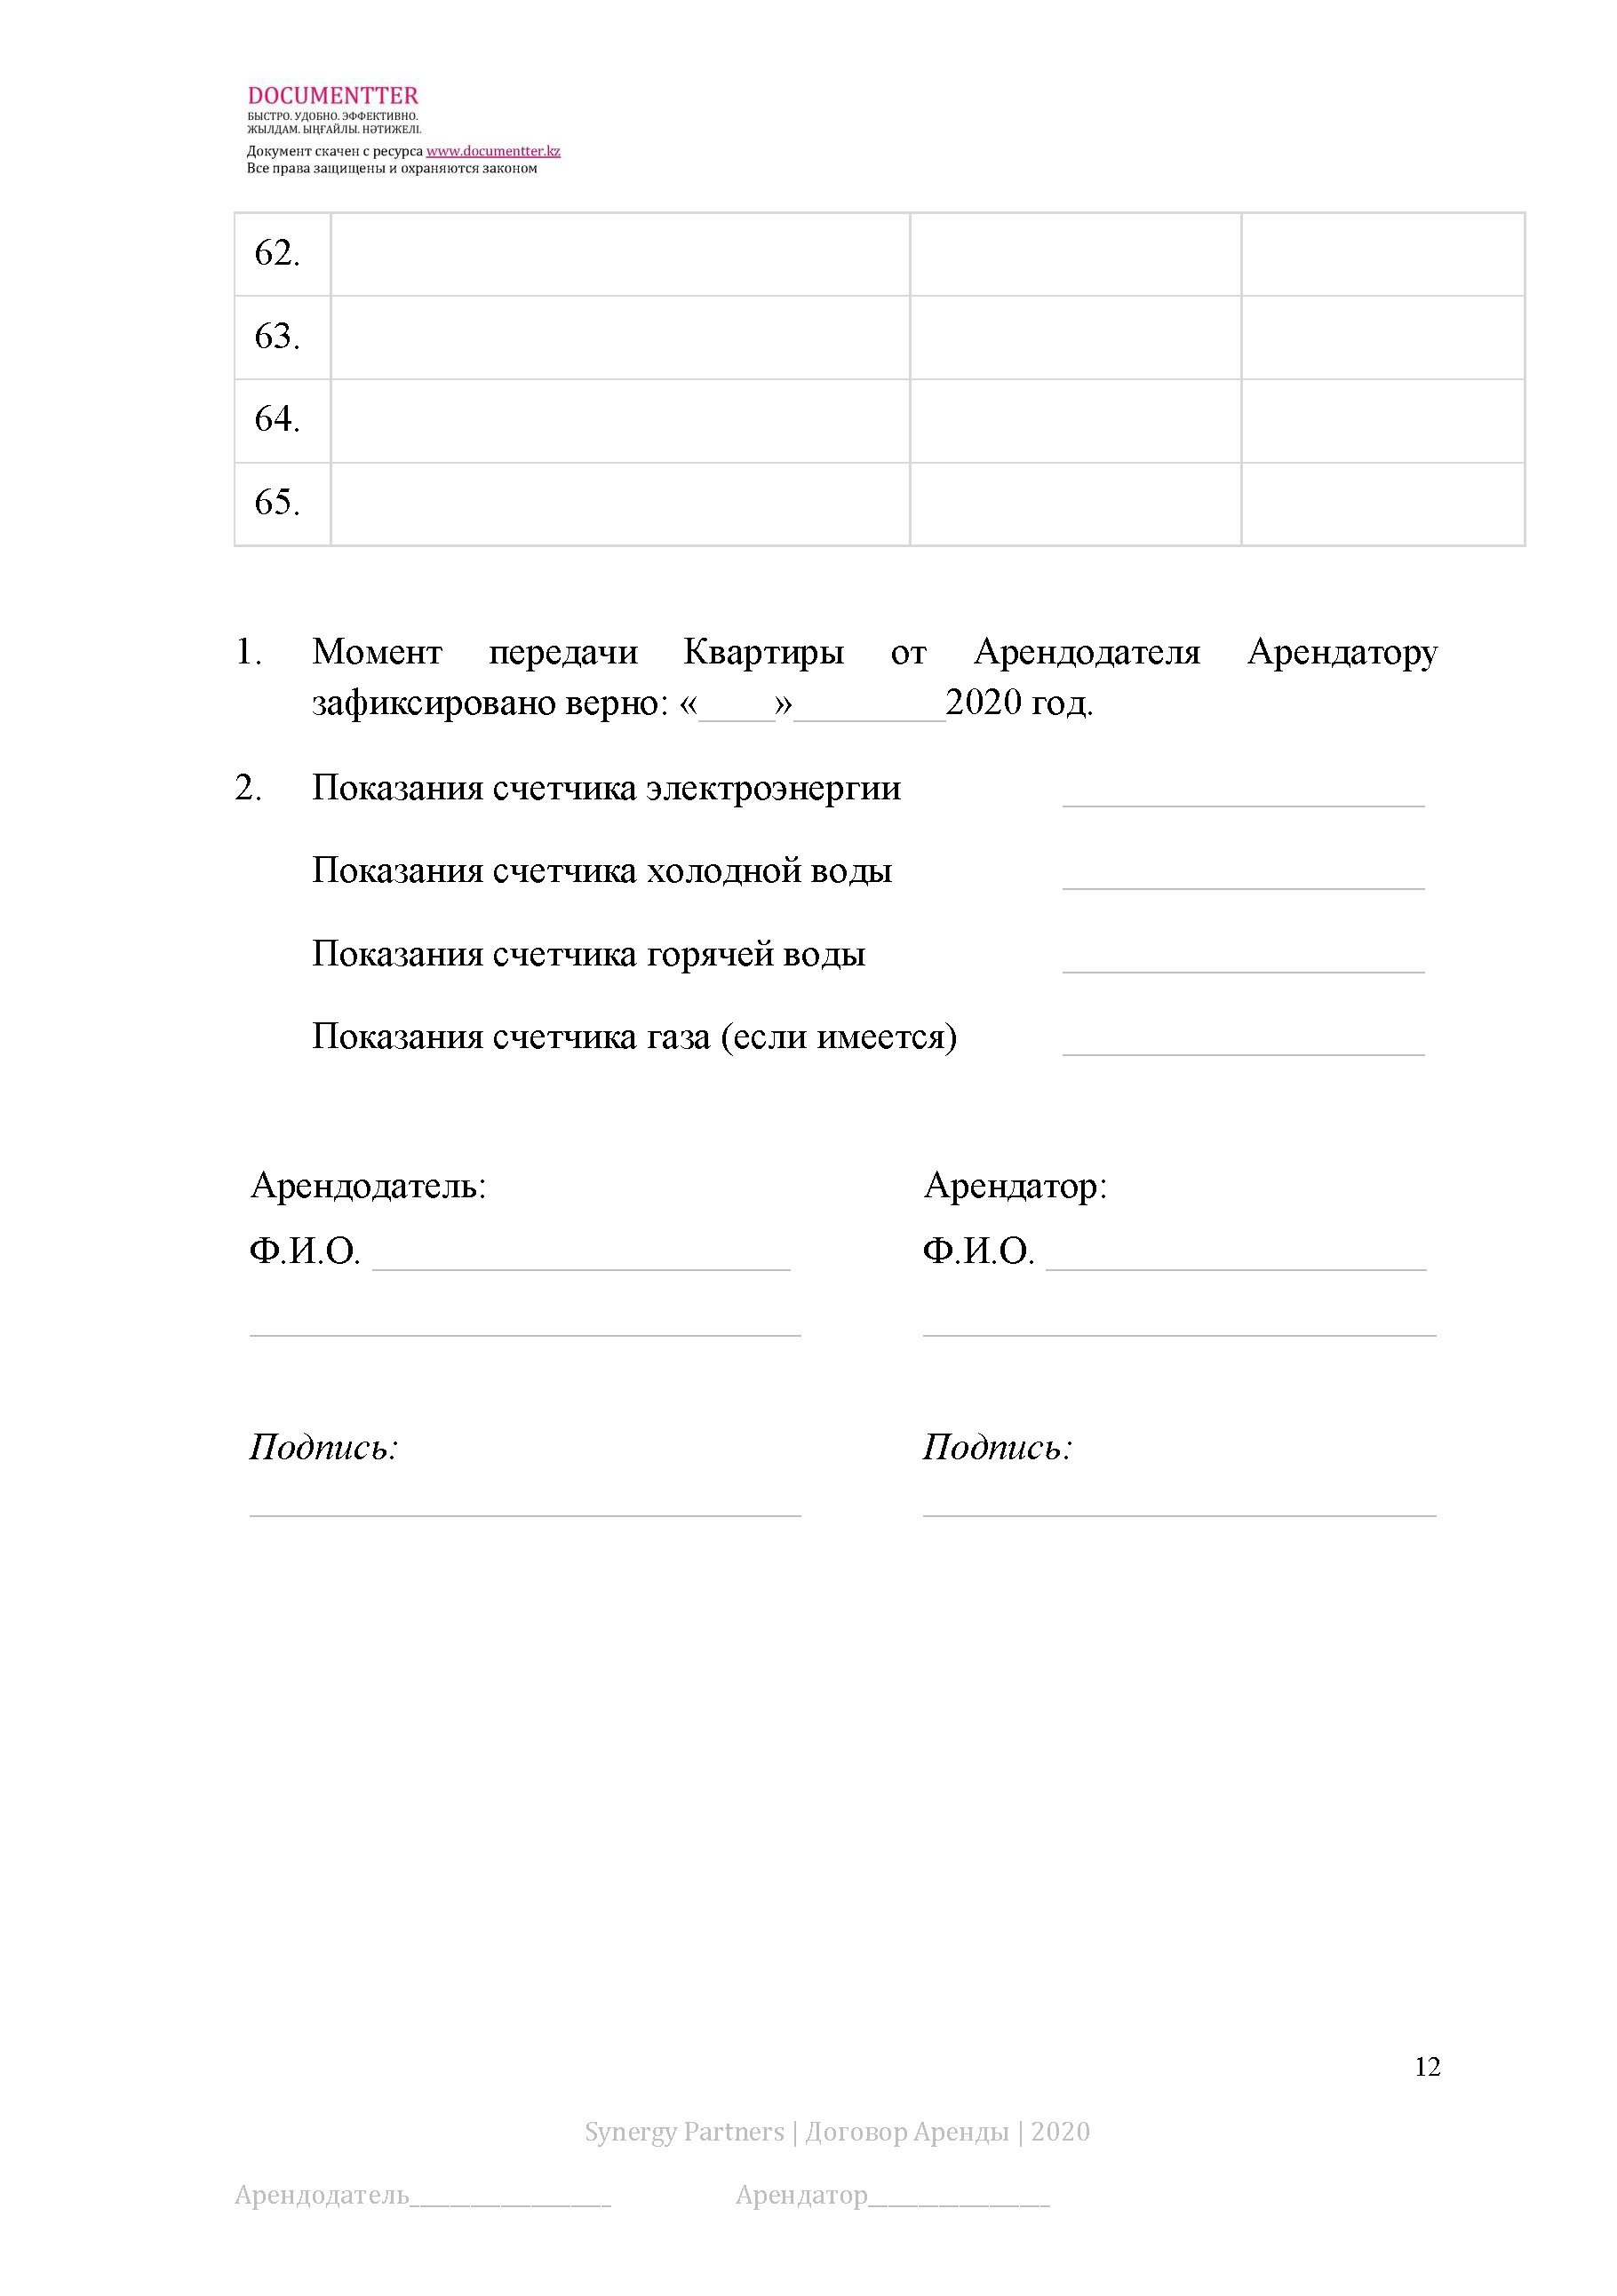 Договор аренды жилого помещения (квартиры) | documentterkz.com в Казахстане